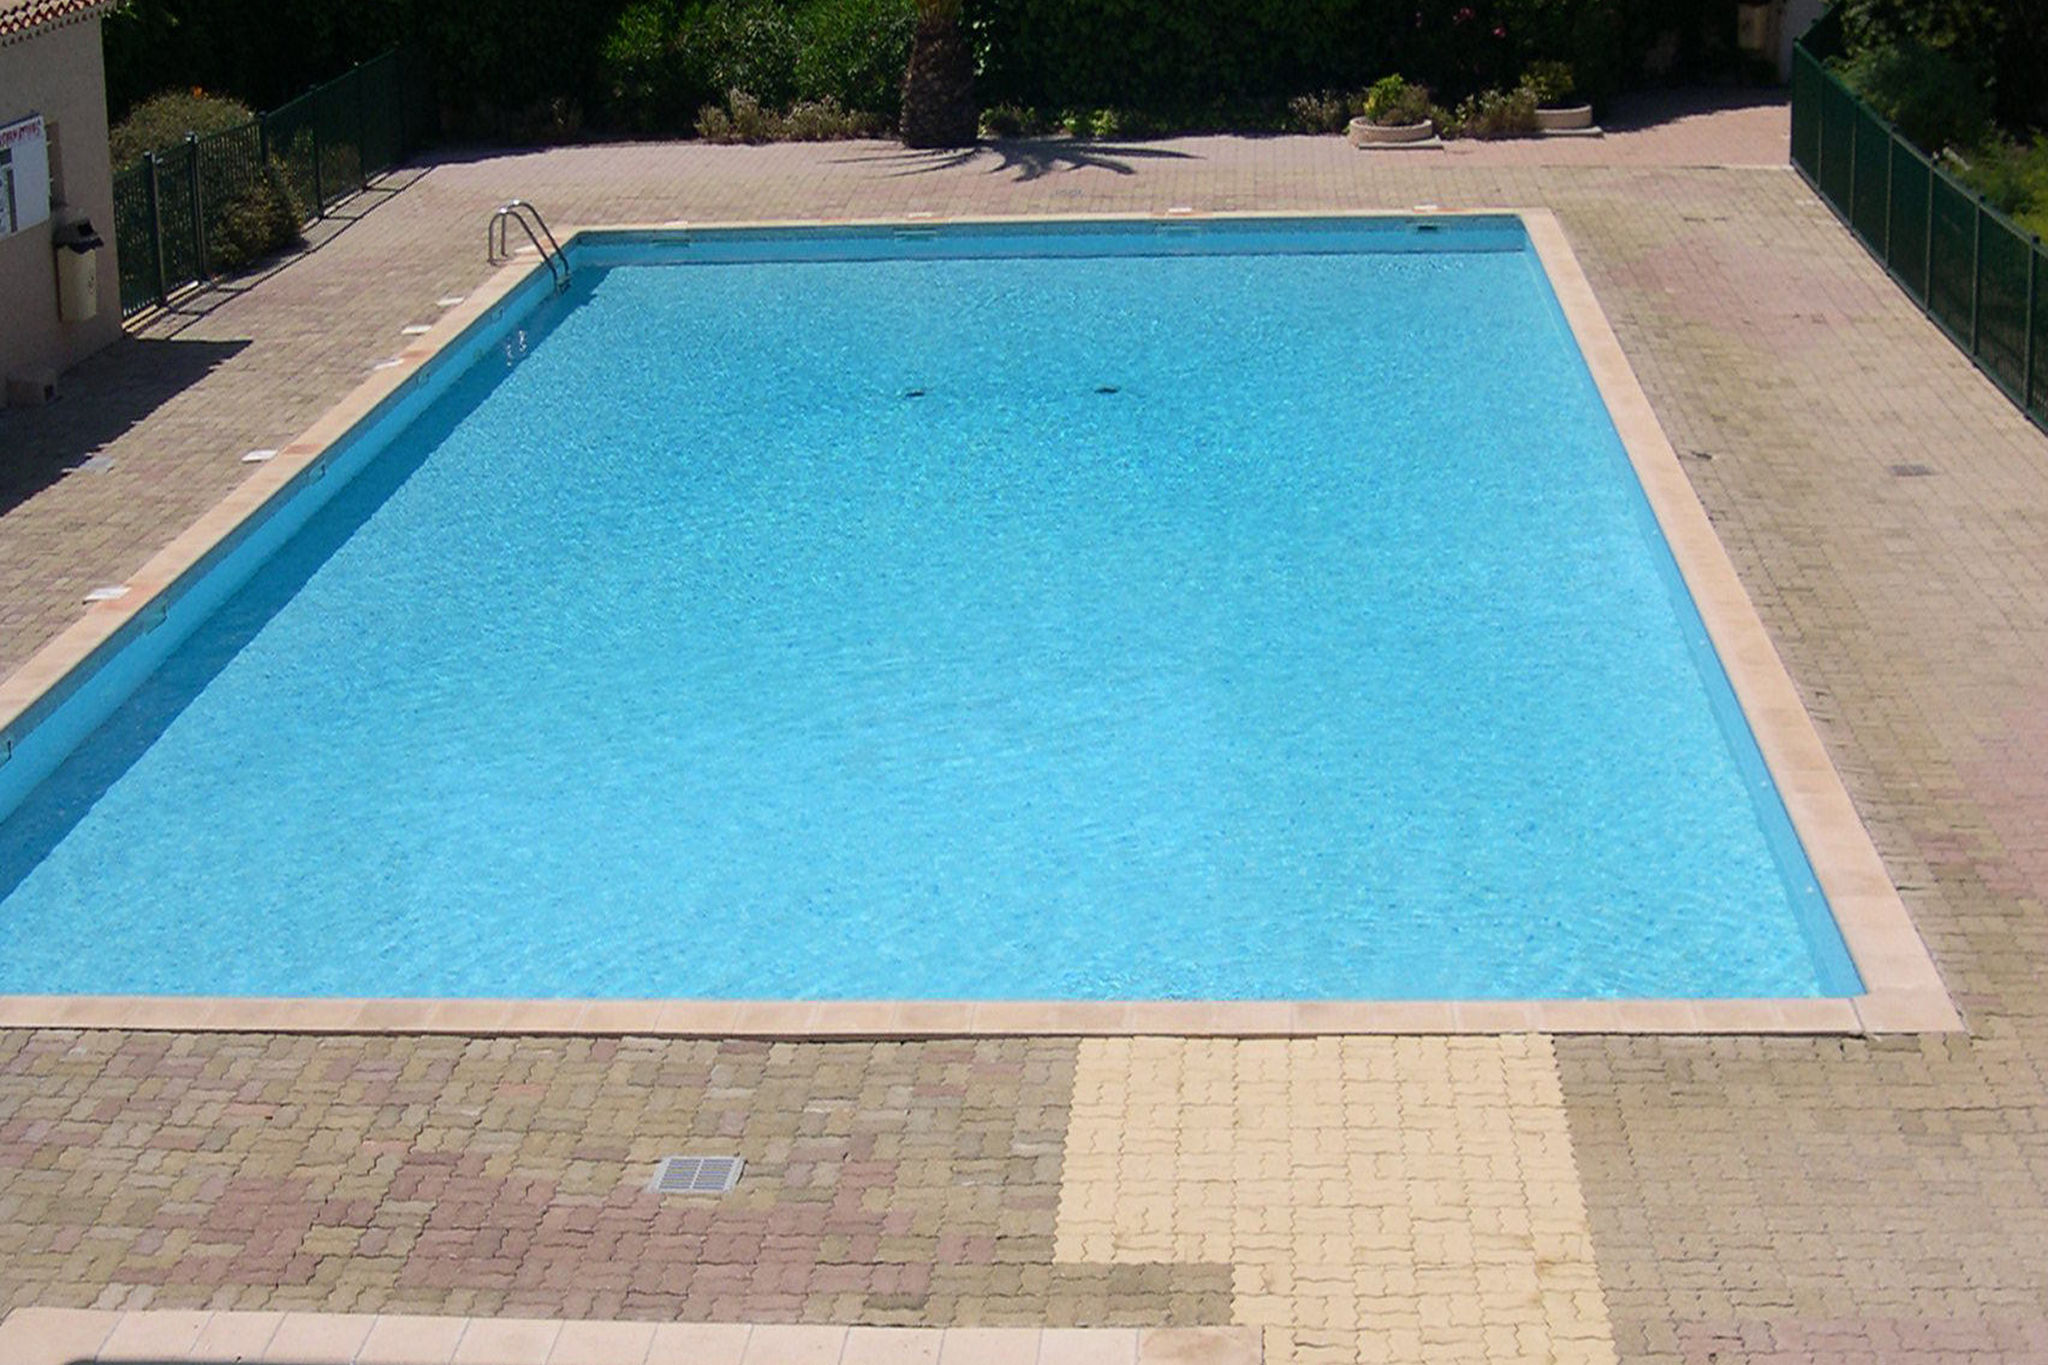 Maison de vacances avec piscine partagée à Sainte-Maxime